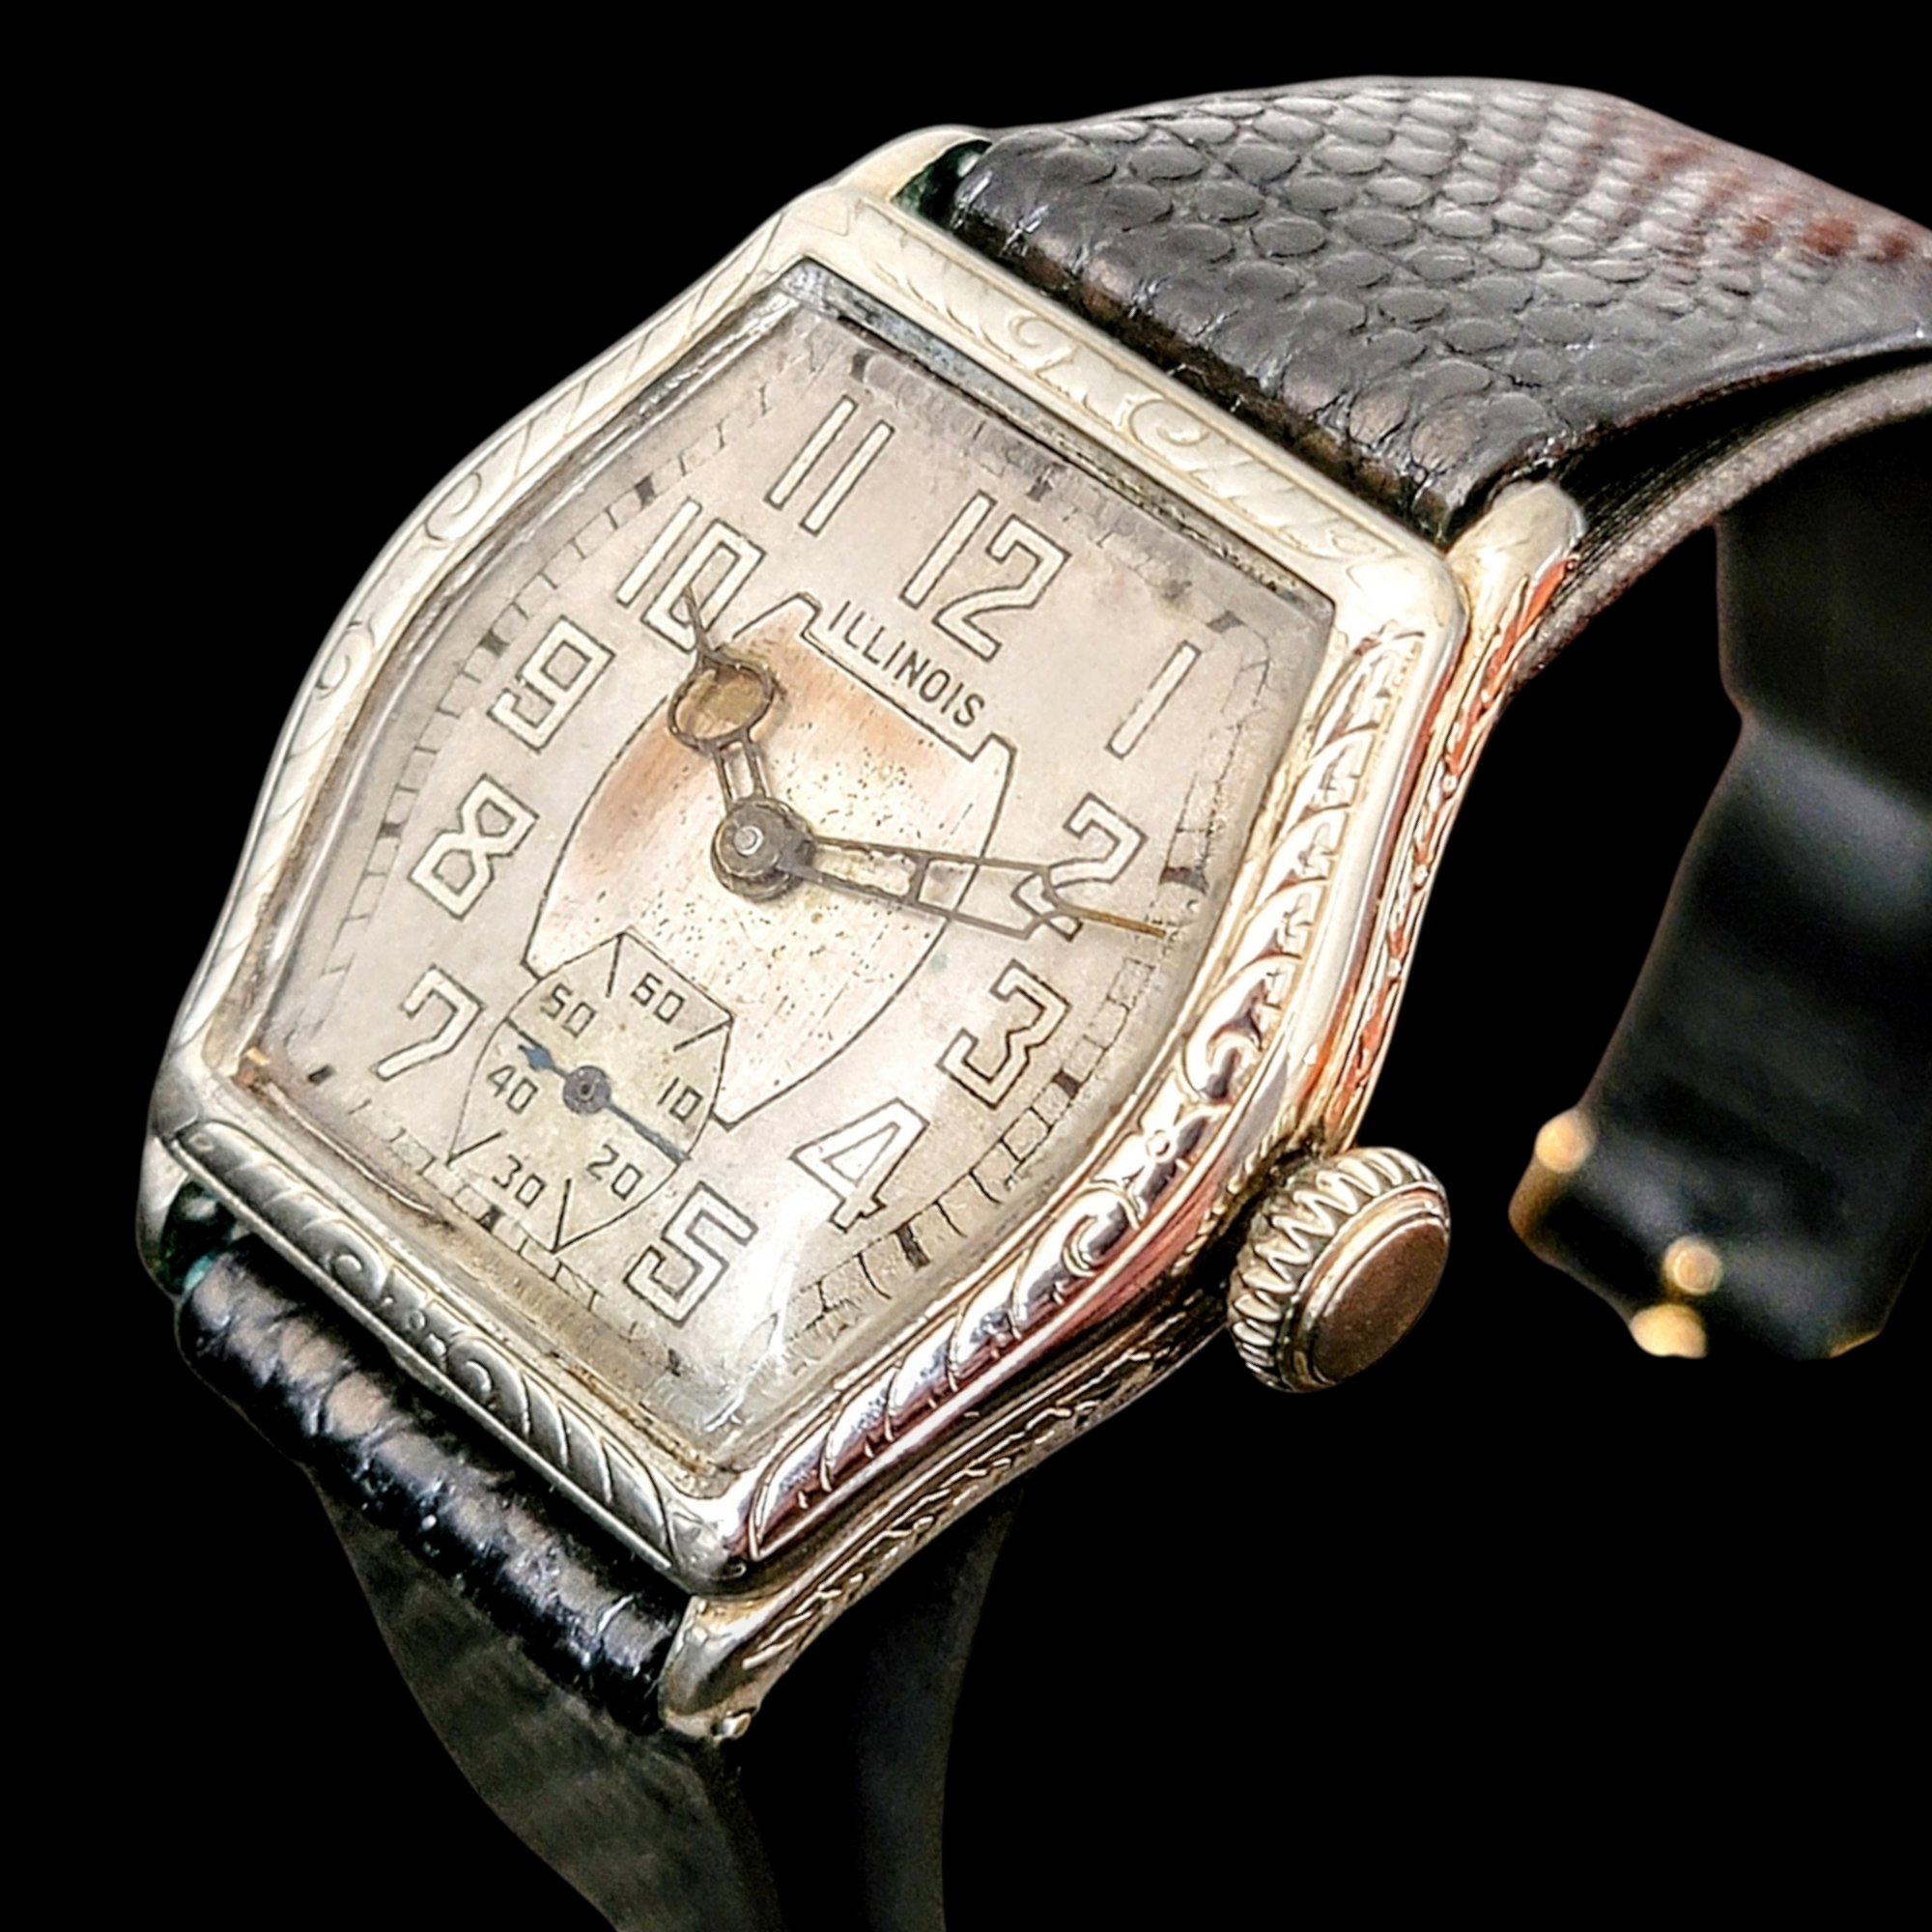 1930 ILLINOIS Watch Company "Mate" Wristwatch